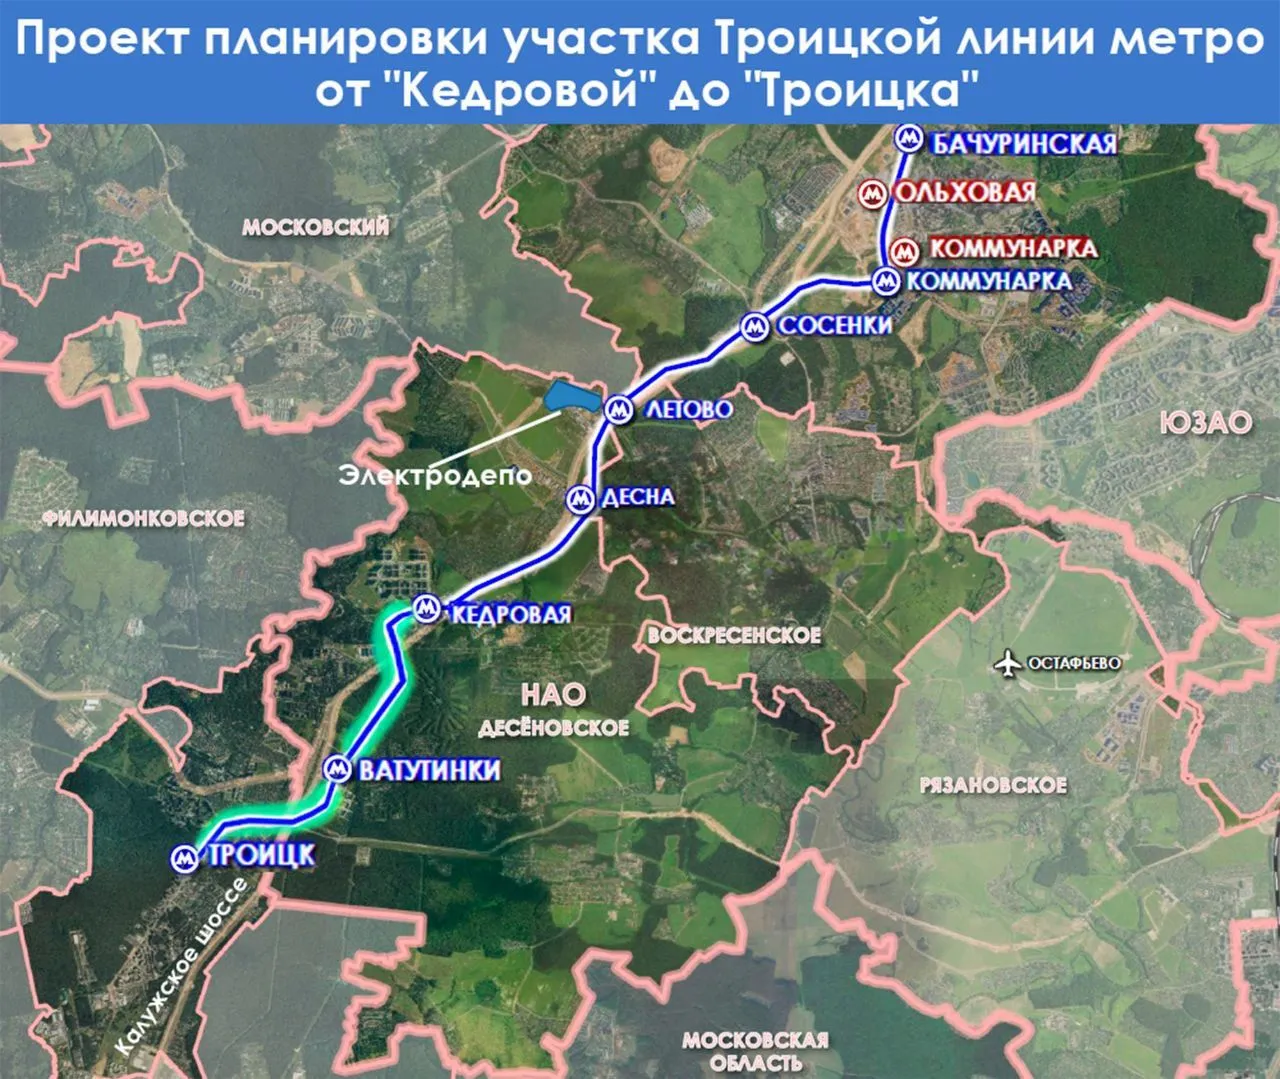 Собянин утвердил планировку финишного участка Троицкой линии метро